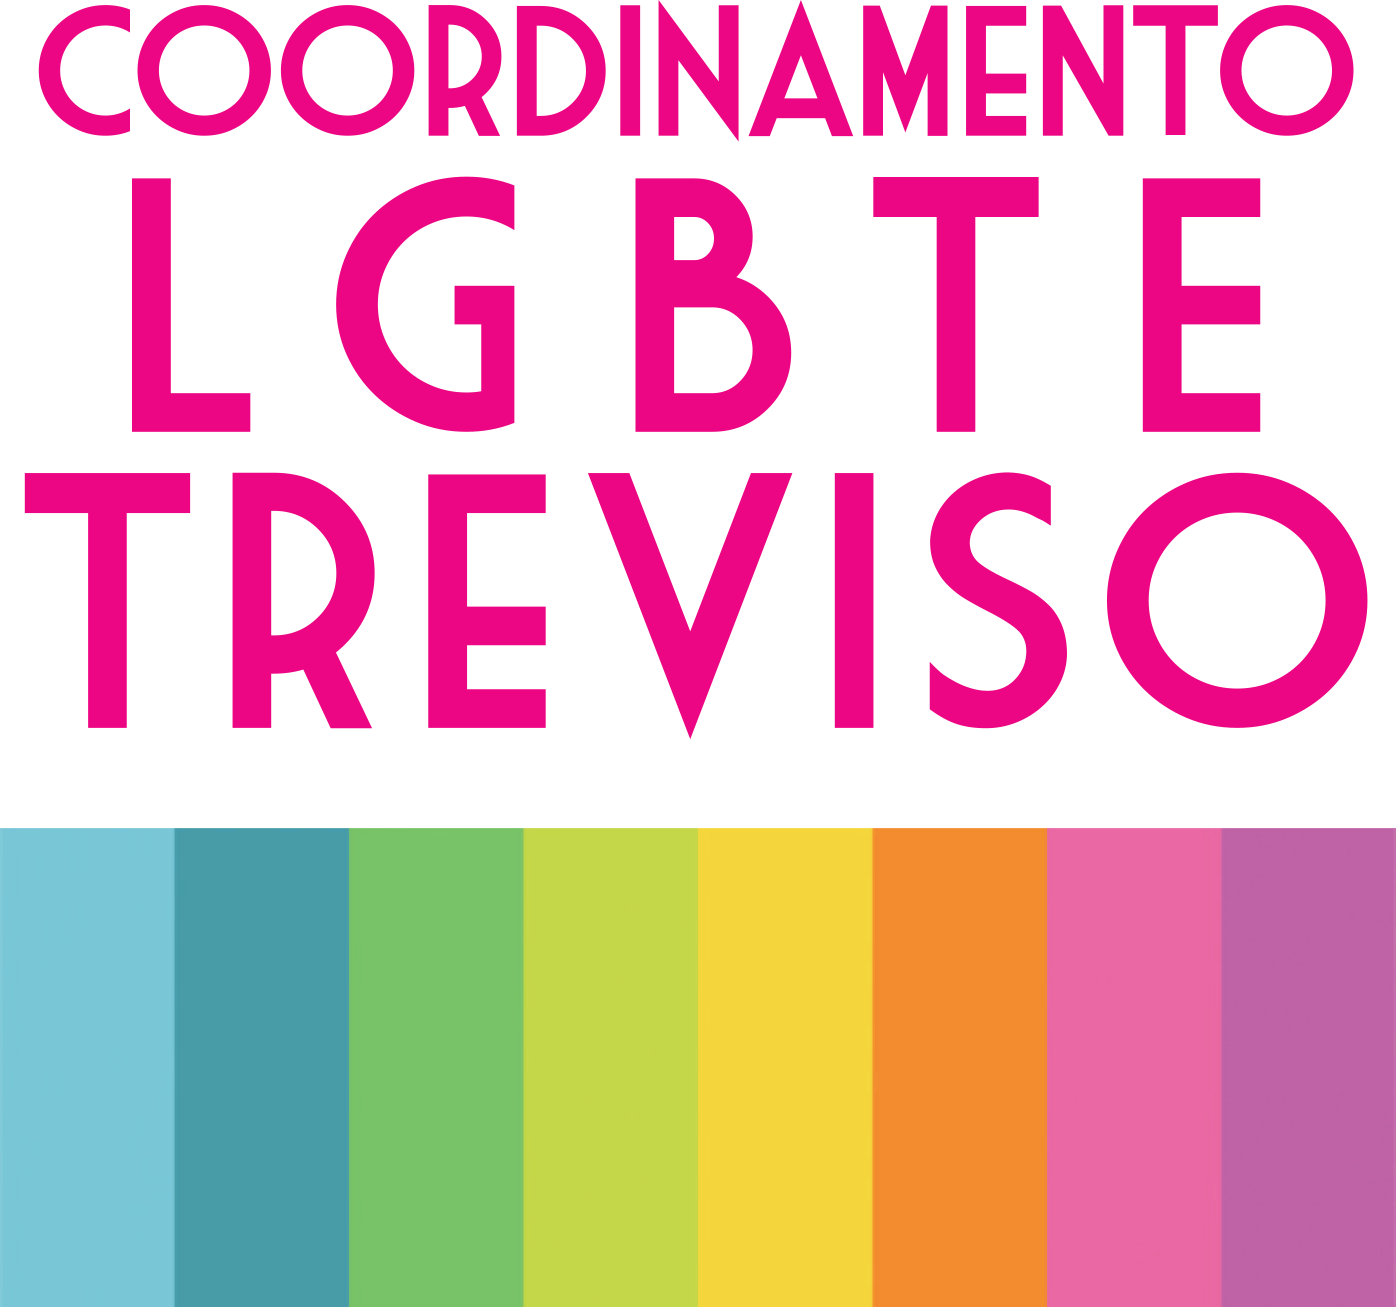 Coordinamento LGBTE Treviso